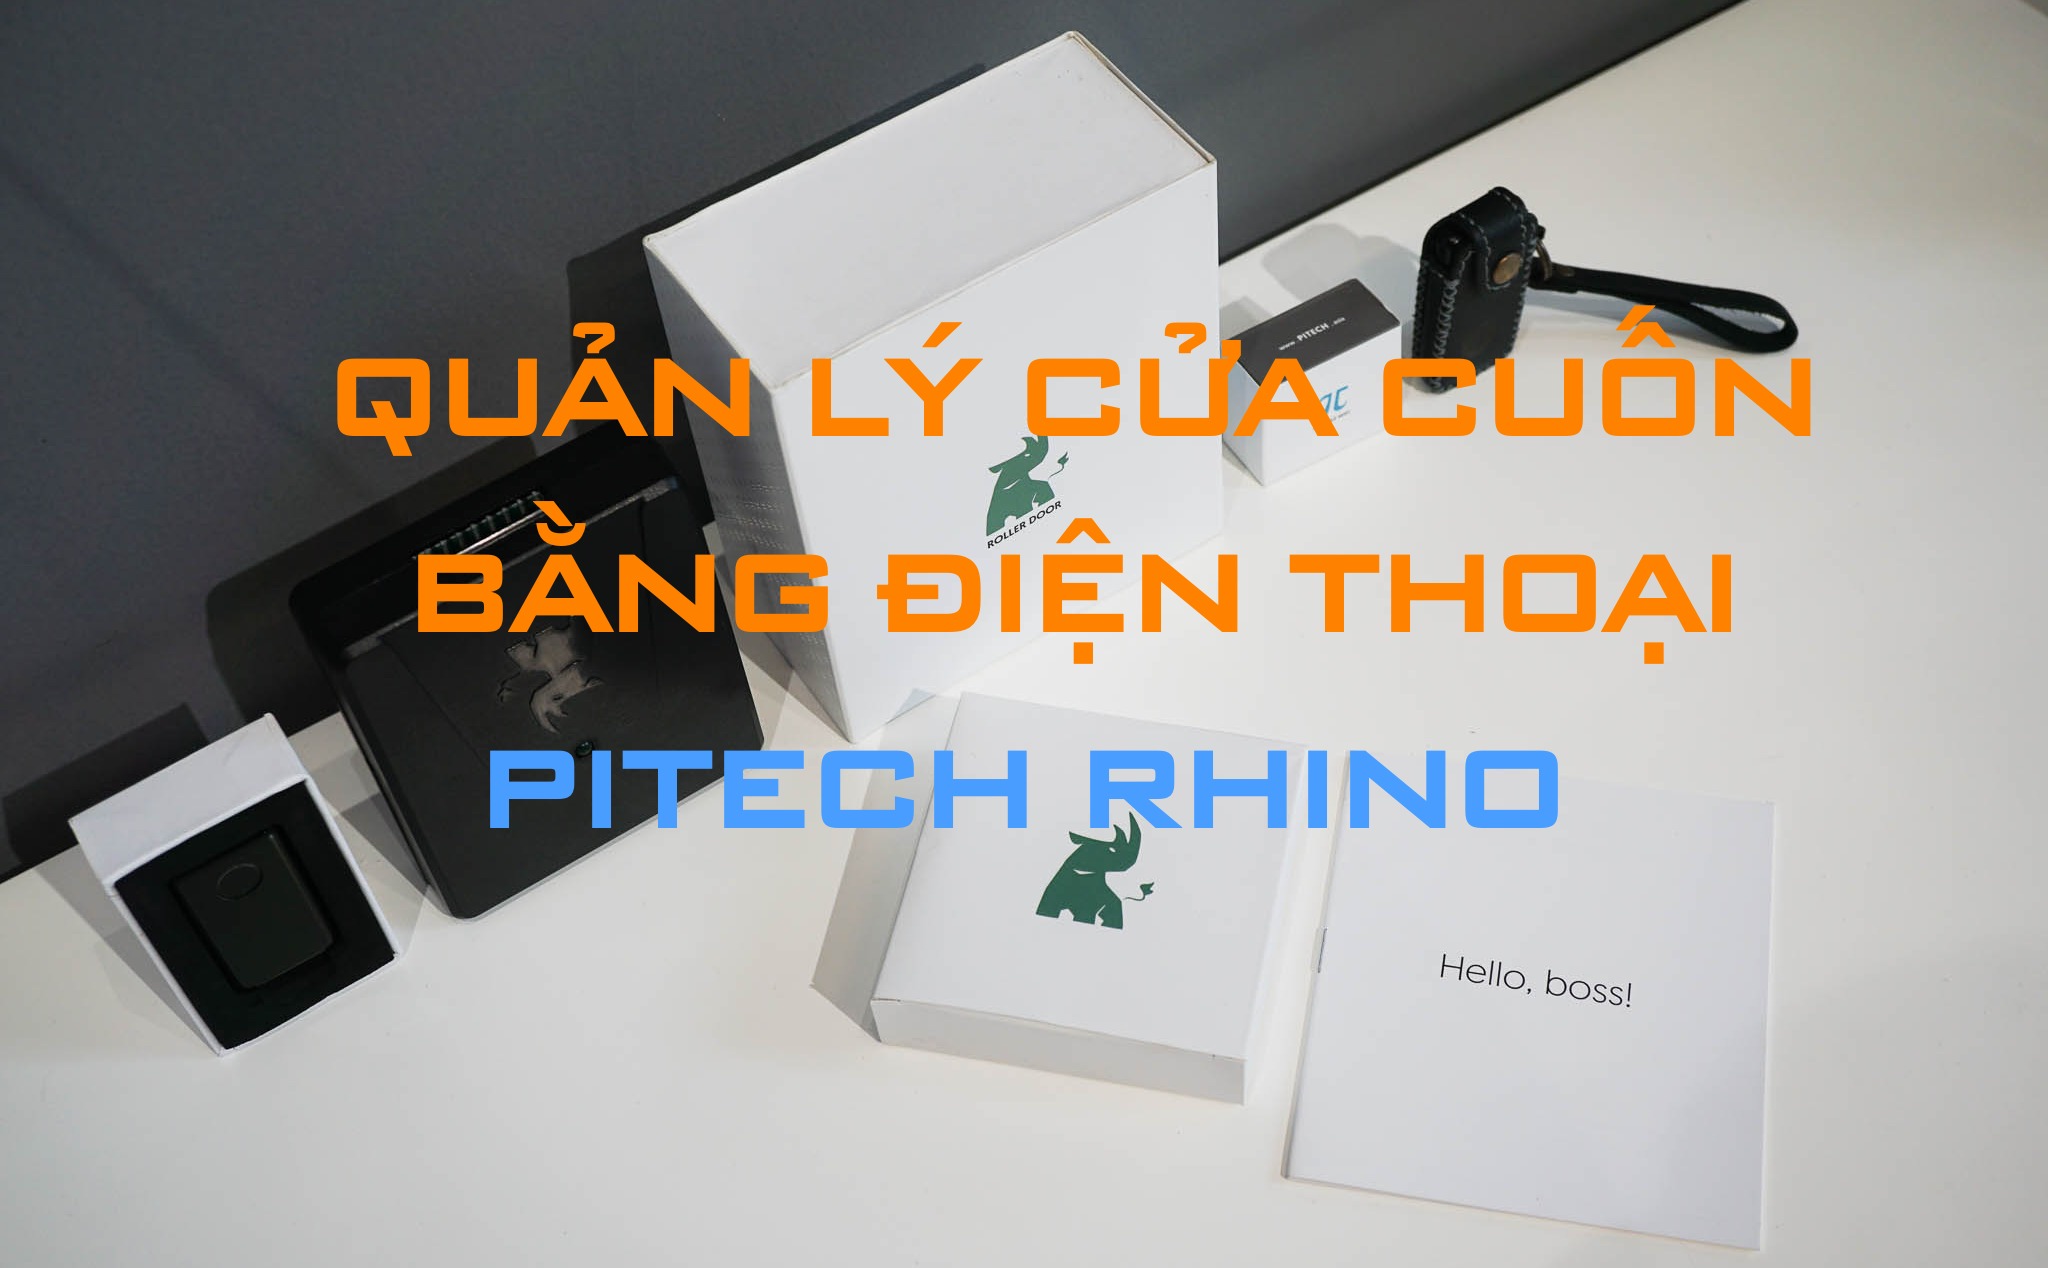 Giới thiệu Pitech Rhino: Hệ thống quản lý cửa cuốn bằng điện thoại thông minh